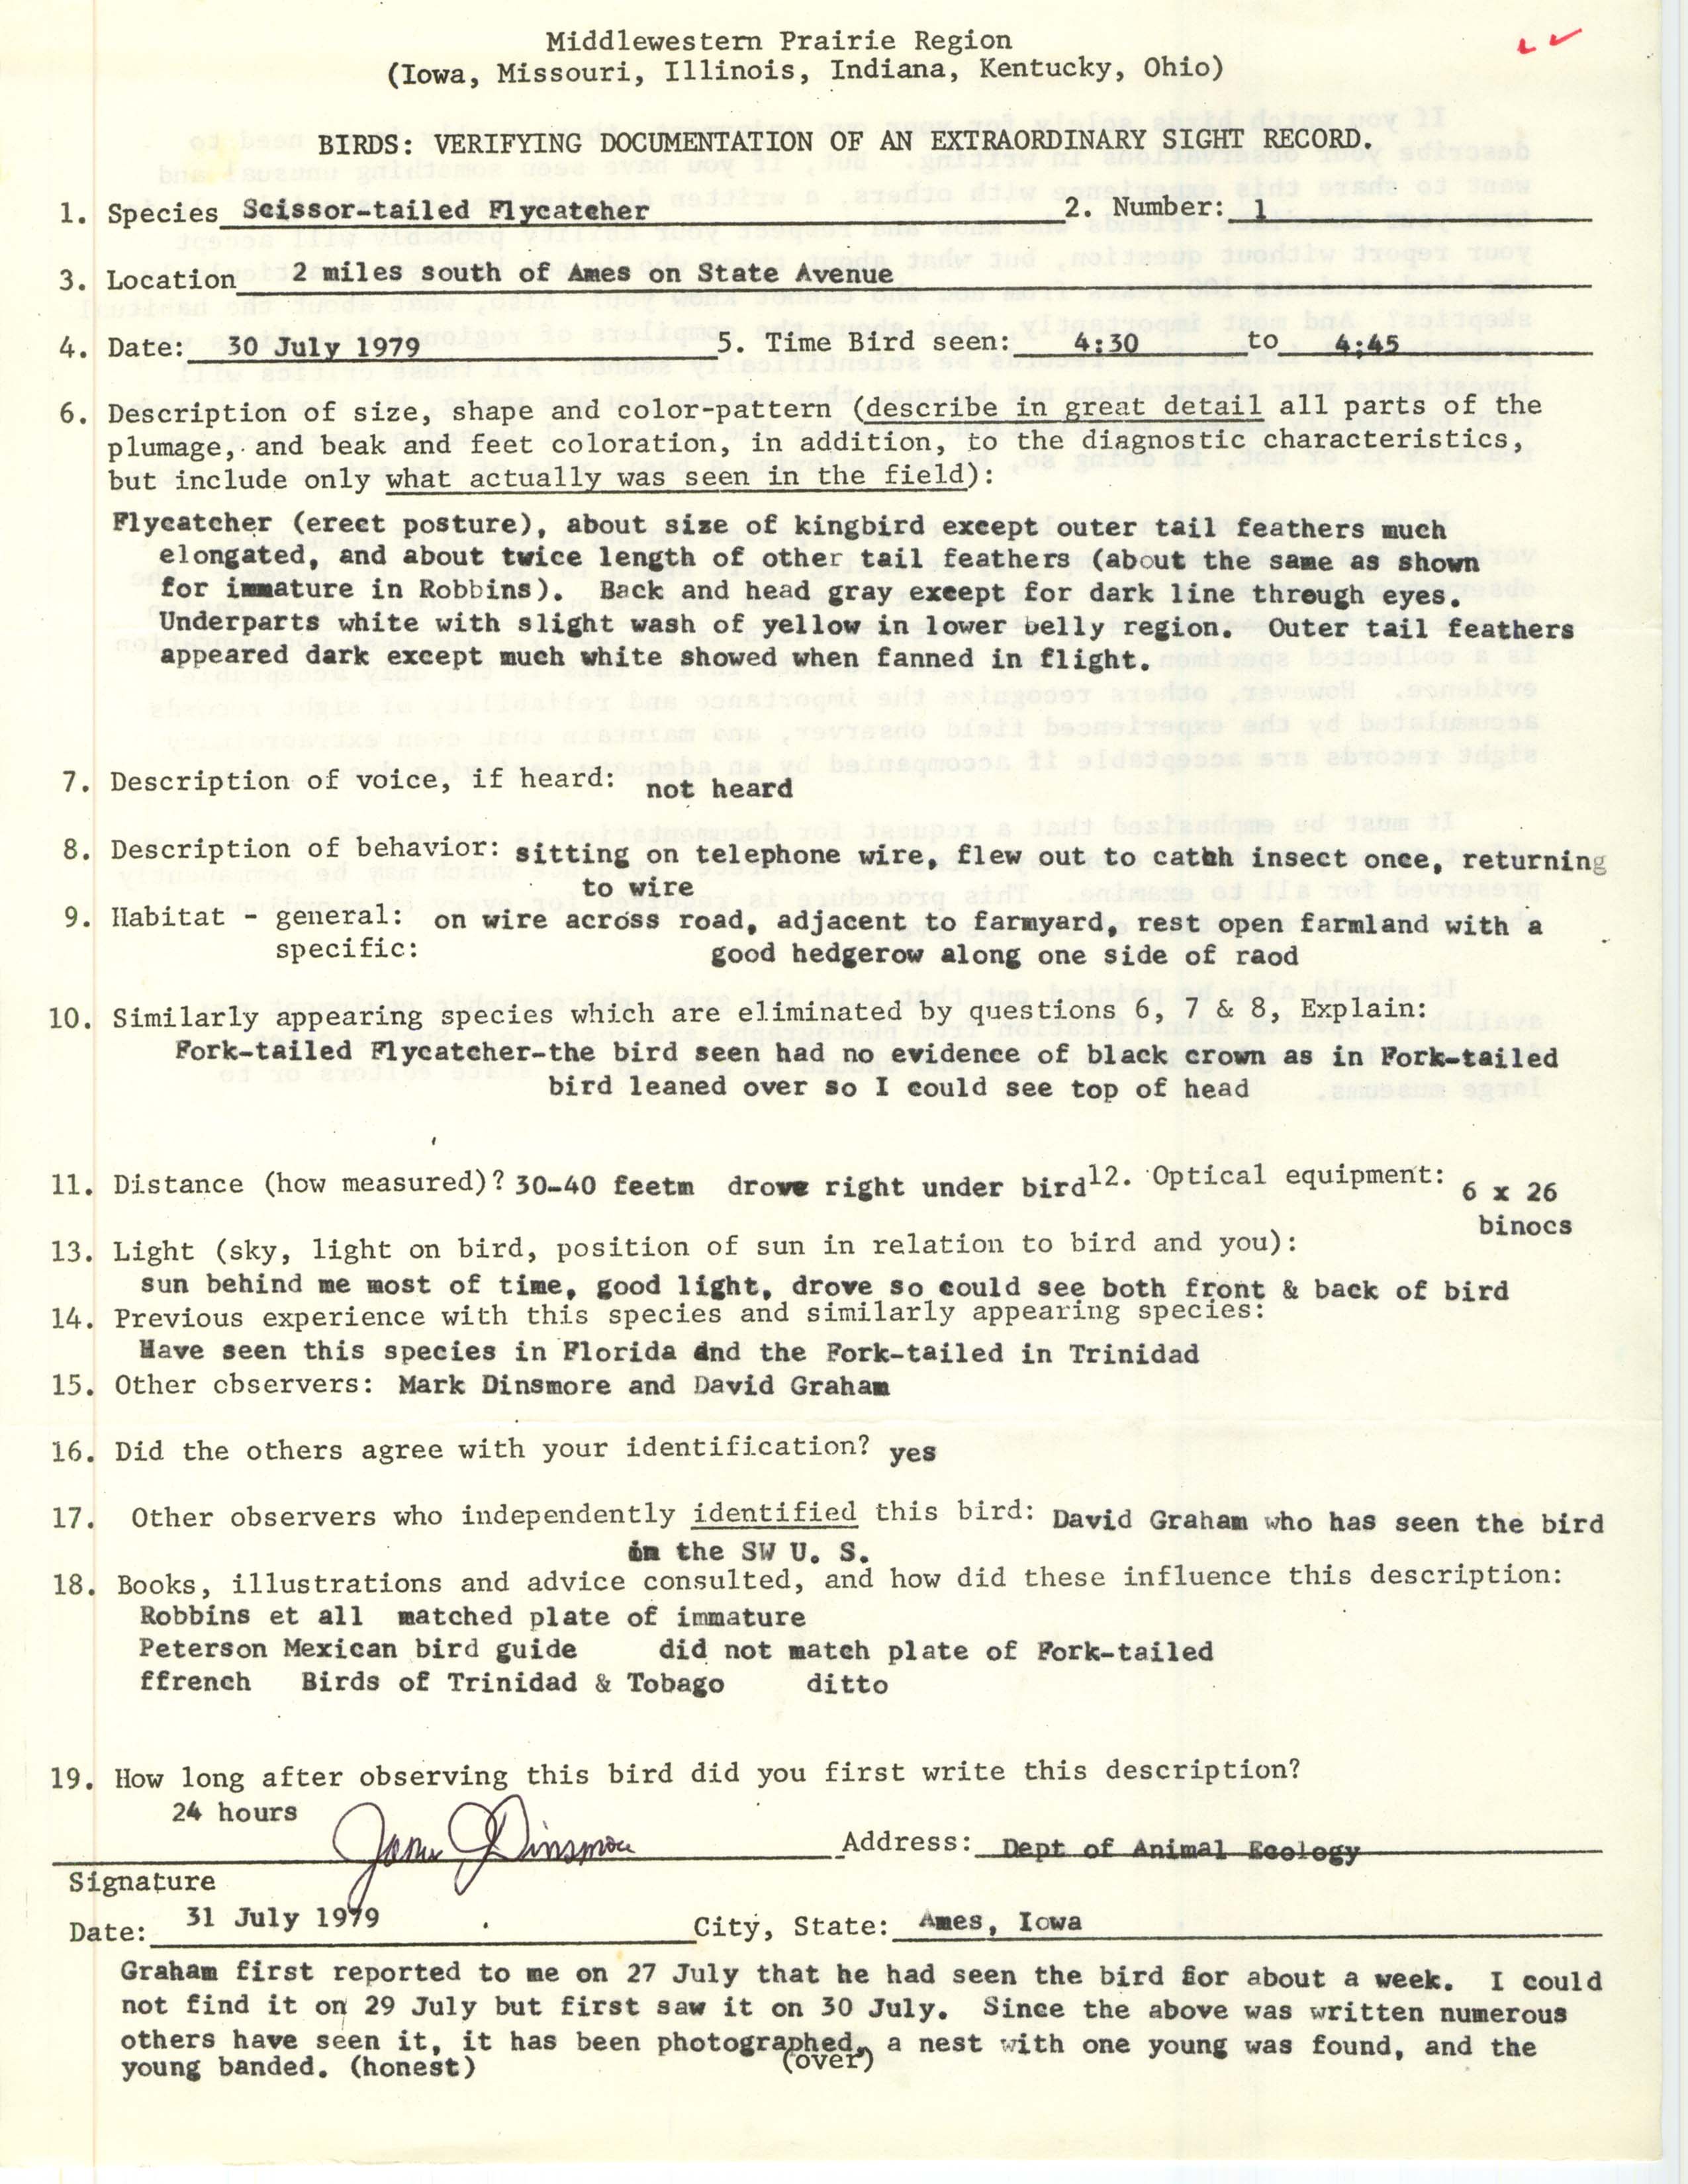 Rare bird documentation form for a Scissor-tailed Flycatcher south of Ames, 1979